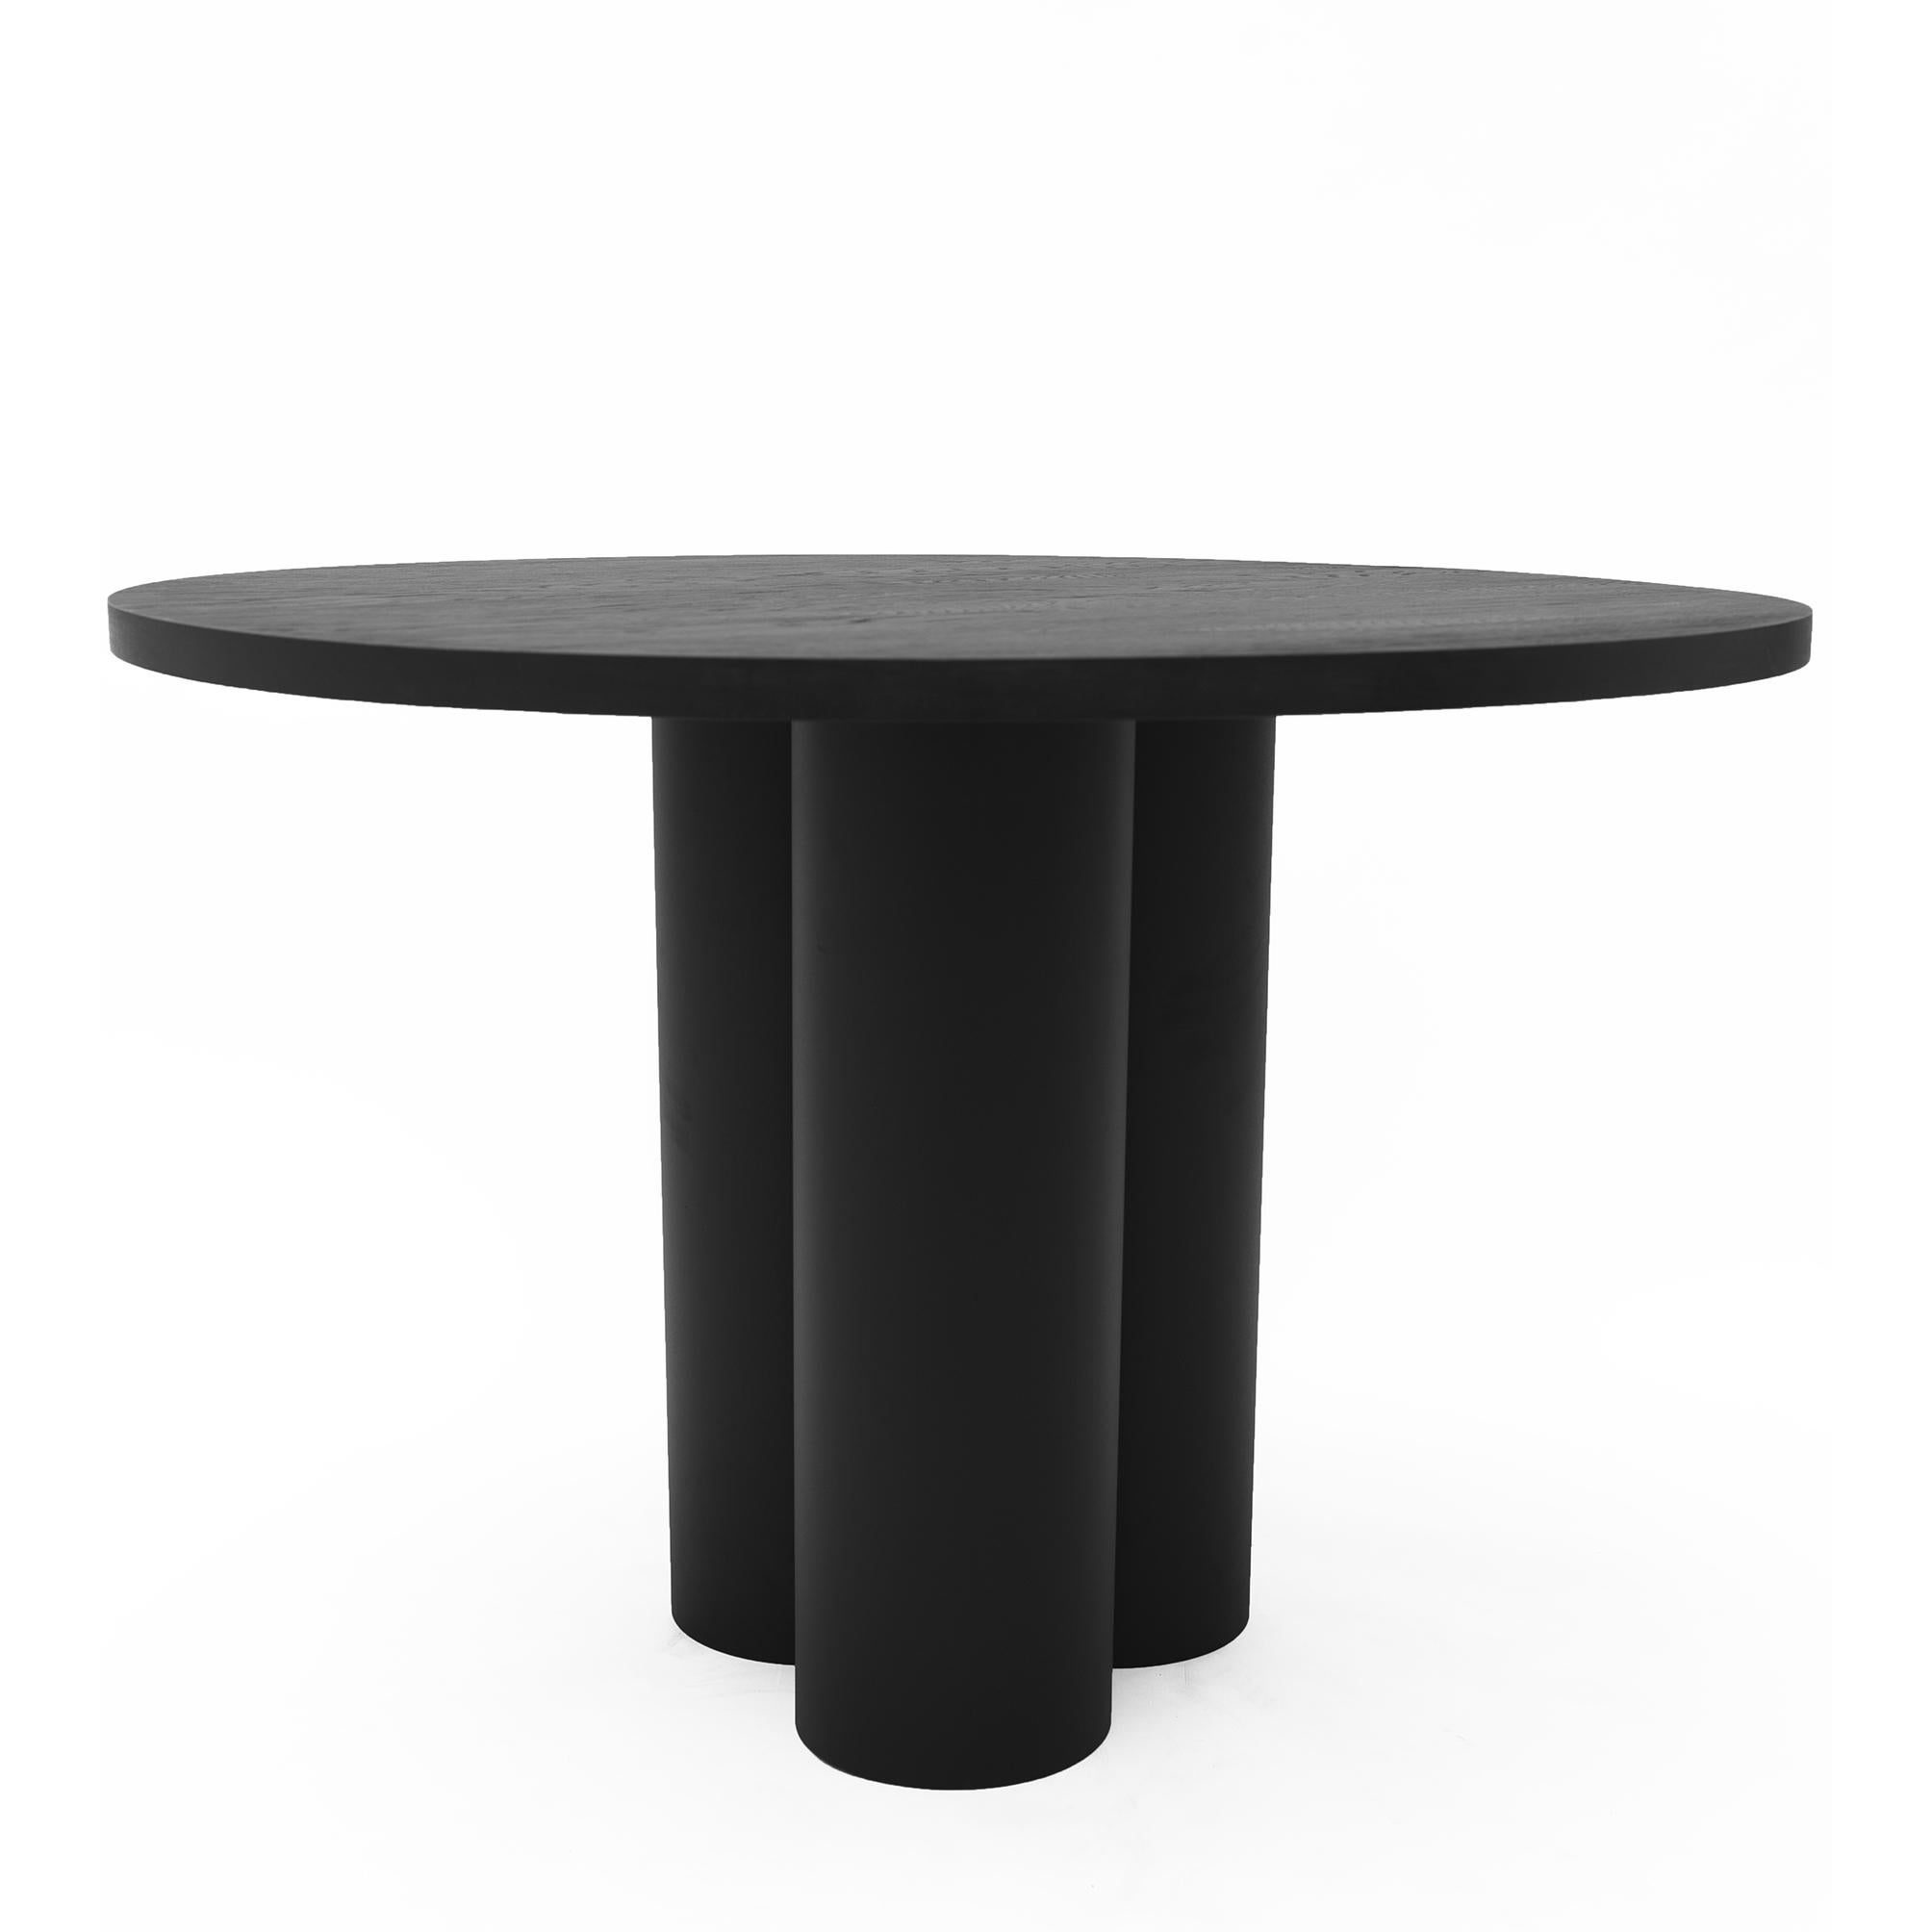 Objet 035 table ronde en chêne par NG Design
Dimensions : D130 x L130 x H70 cm
MATERIAL : Acier revêtu par poudrage, chêne massif.

Également disponible : Tous les objets sont disponibles en différents matériaux et couleurs sur demande.

Table ronde